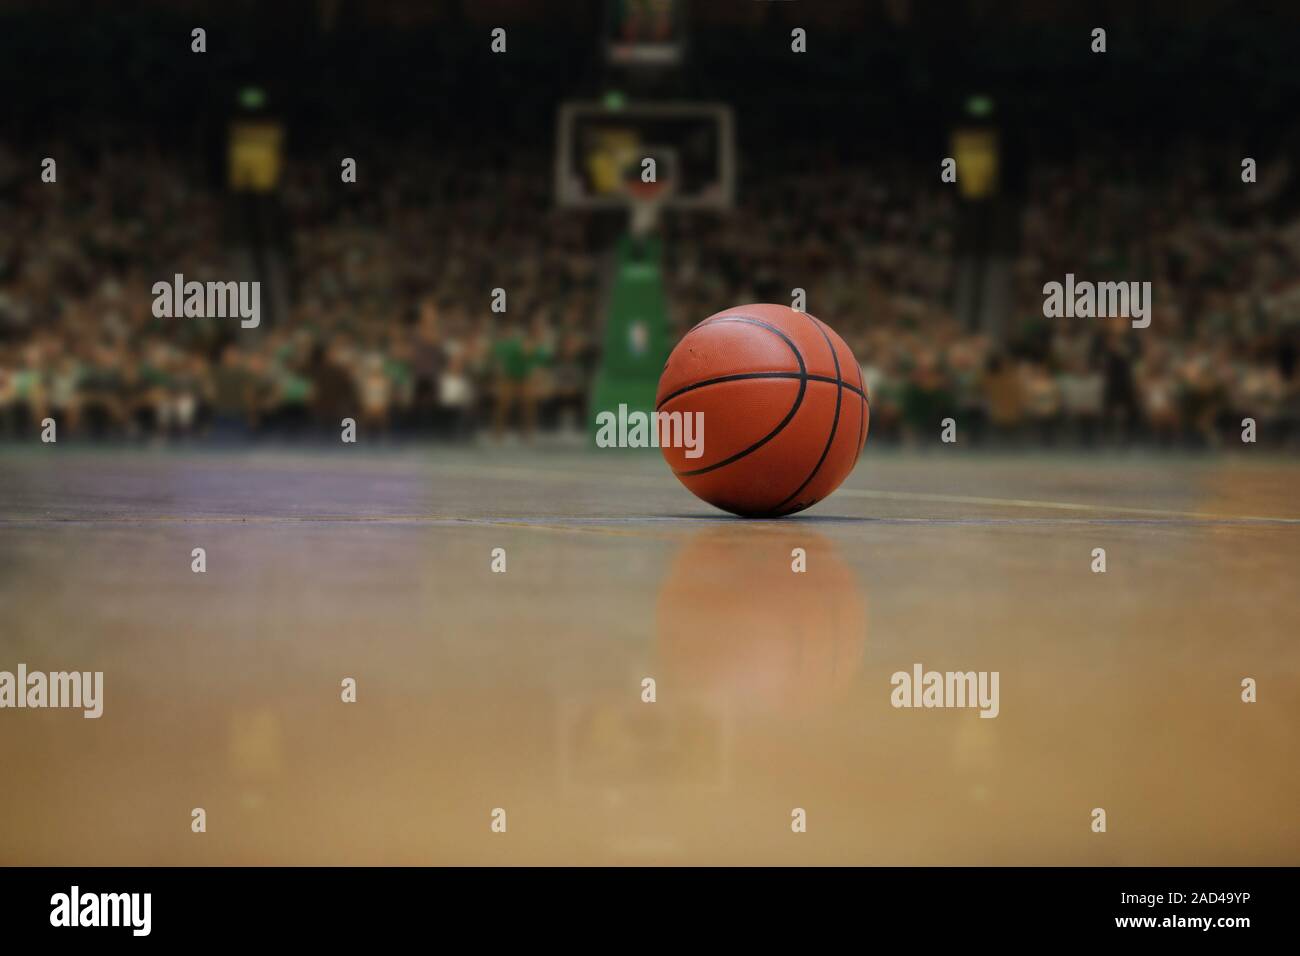 Nba basketball net player fotografías e imágenes de alta resolución - Alamy